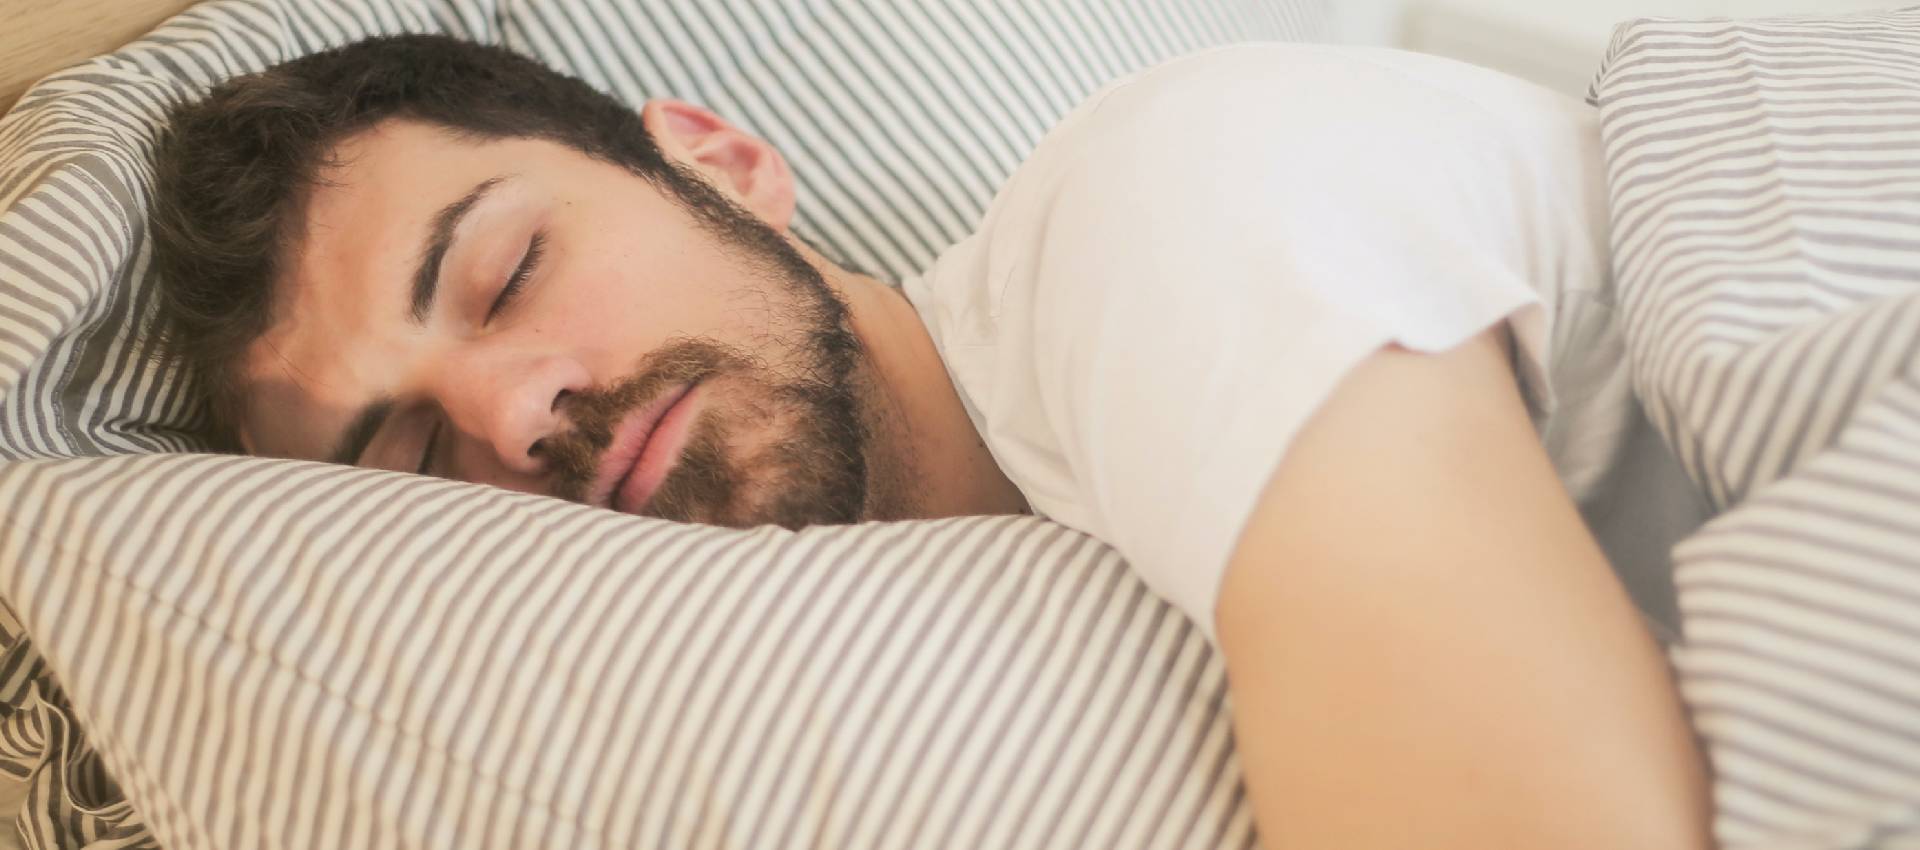 Come migliora la qualità del sonno dopo un intervento bariatrico